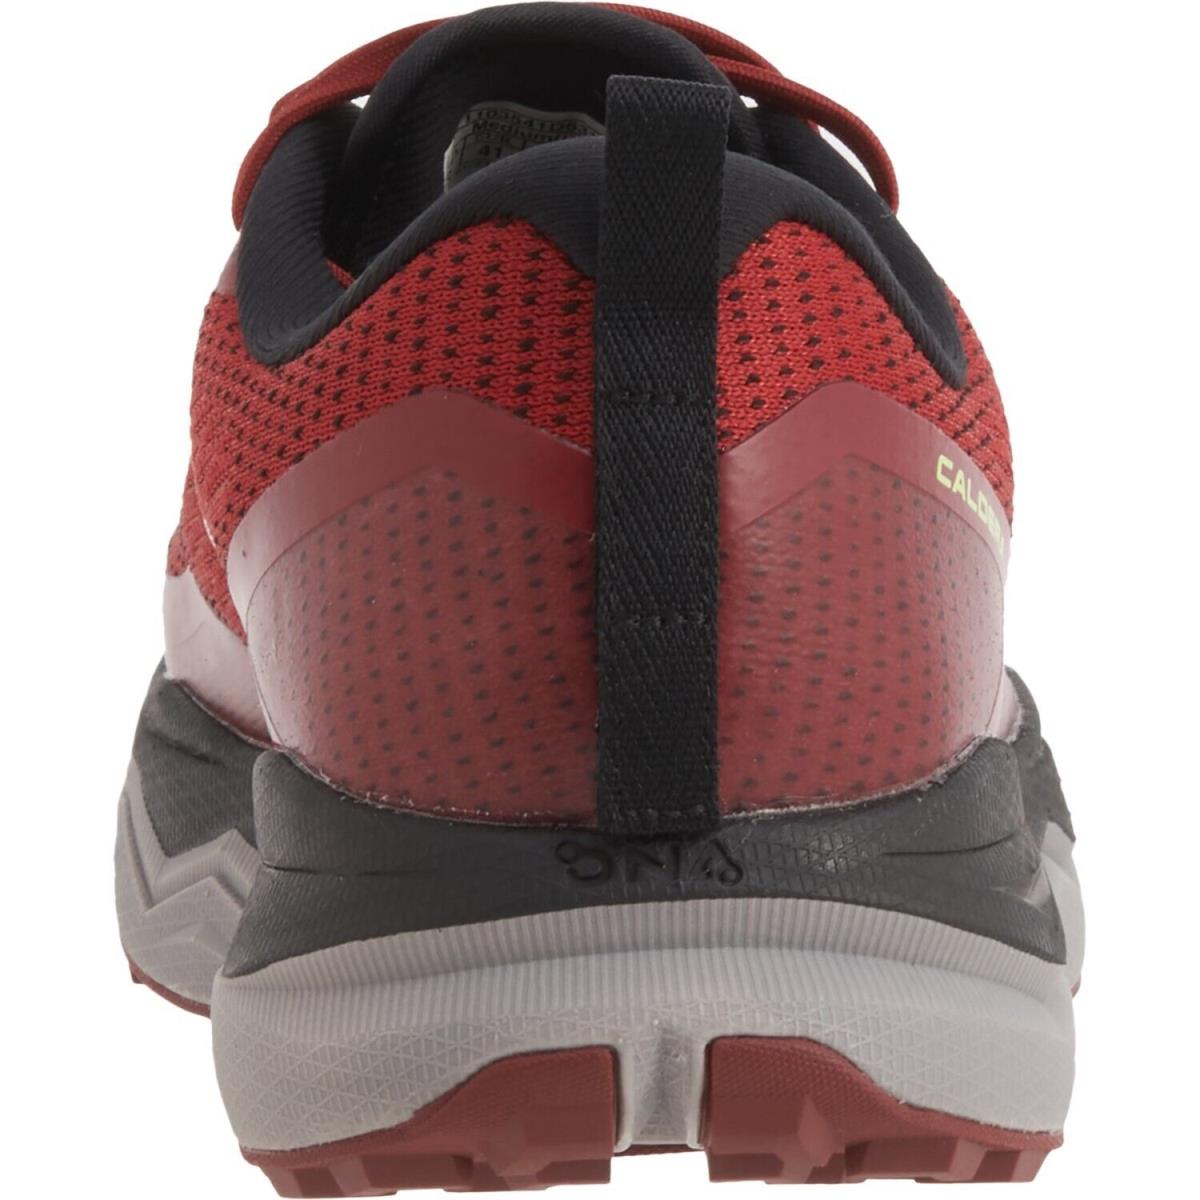 Brooks shoes Caldera - Red , Red Black Nightlife Manufacturer 6